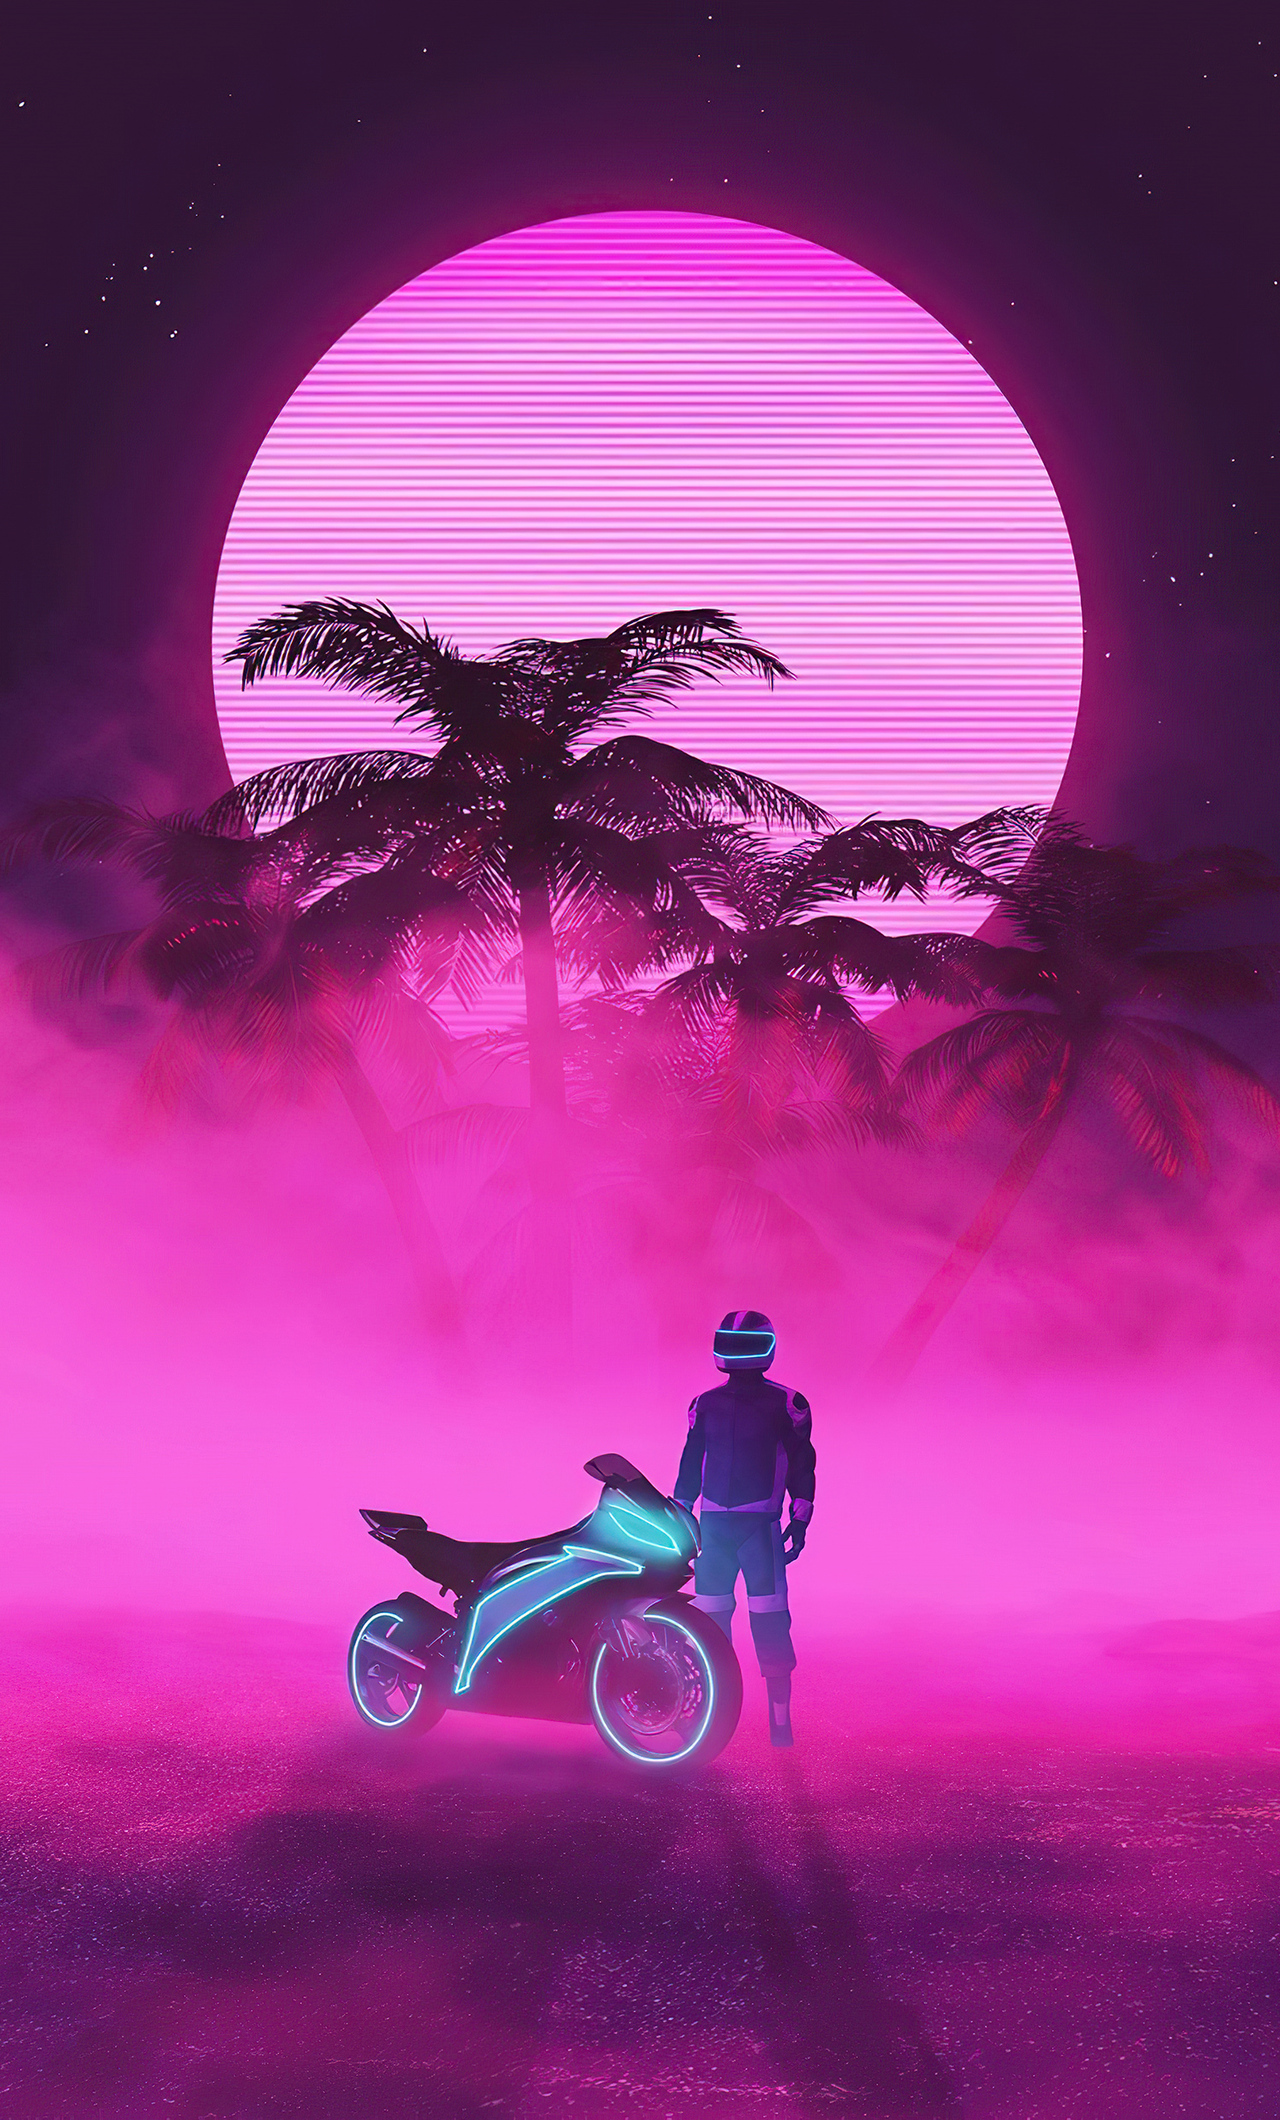 Hãy cùng ngắm nhìn bức hình nền của một chàng trai đầy quyến rũ trên chiếc xe đạp neon với gam màu hồng tươi. Bức ảnh này sẽ đưa bạn đến một thế giới đầy màu sắc và năng lượng.